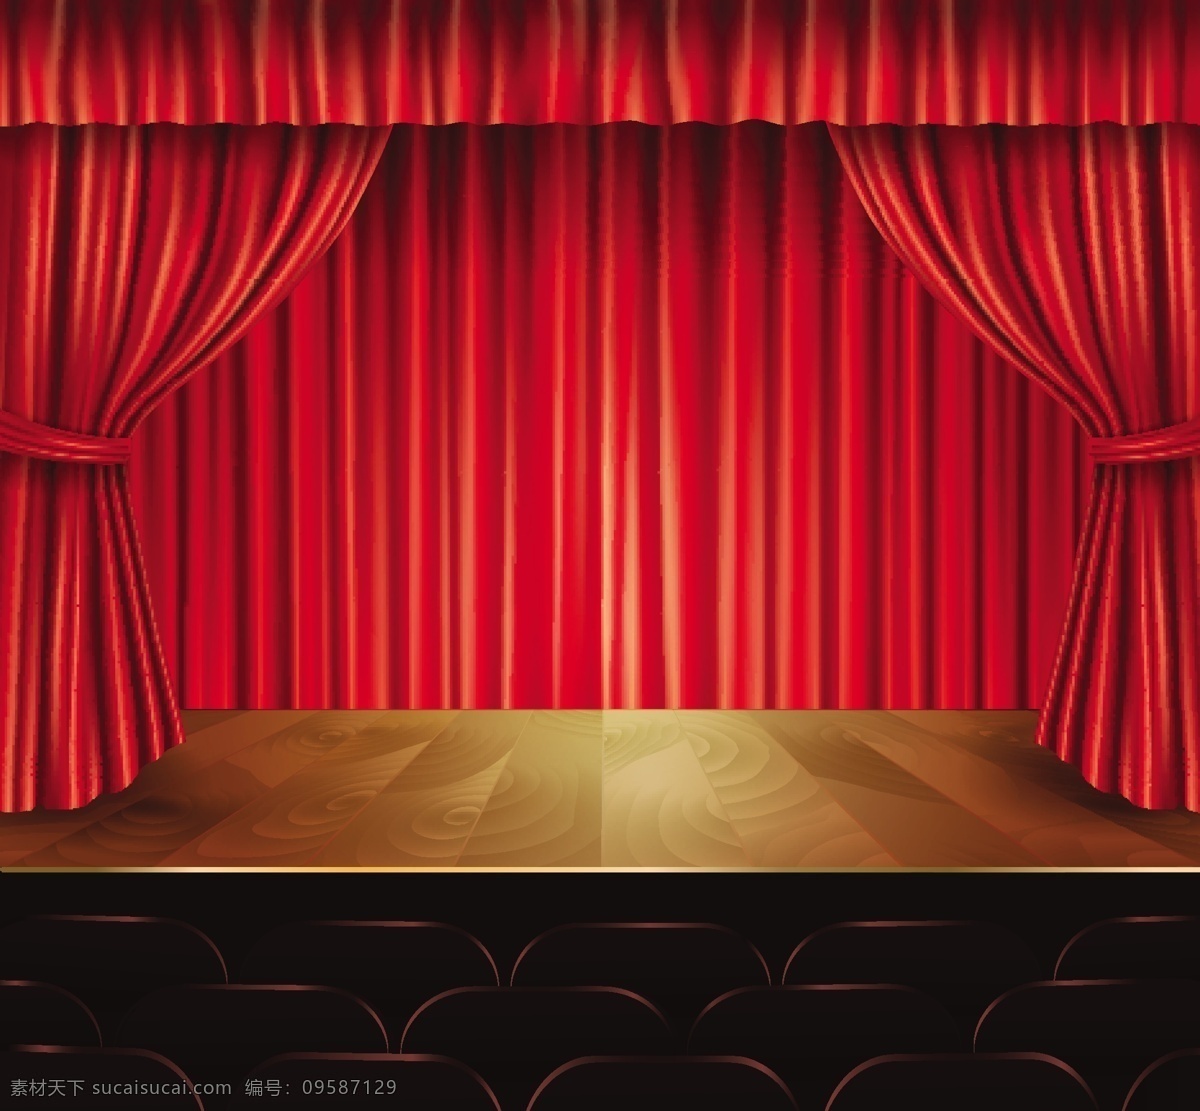 舞台背景设计 背景 色彩 事件 舞台 幕布 音乐会 戏剧 表演 古典 娱乐 场景 观众 喜剧 歌剧 彩色